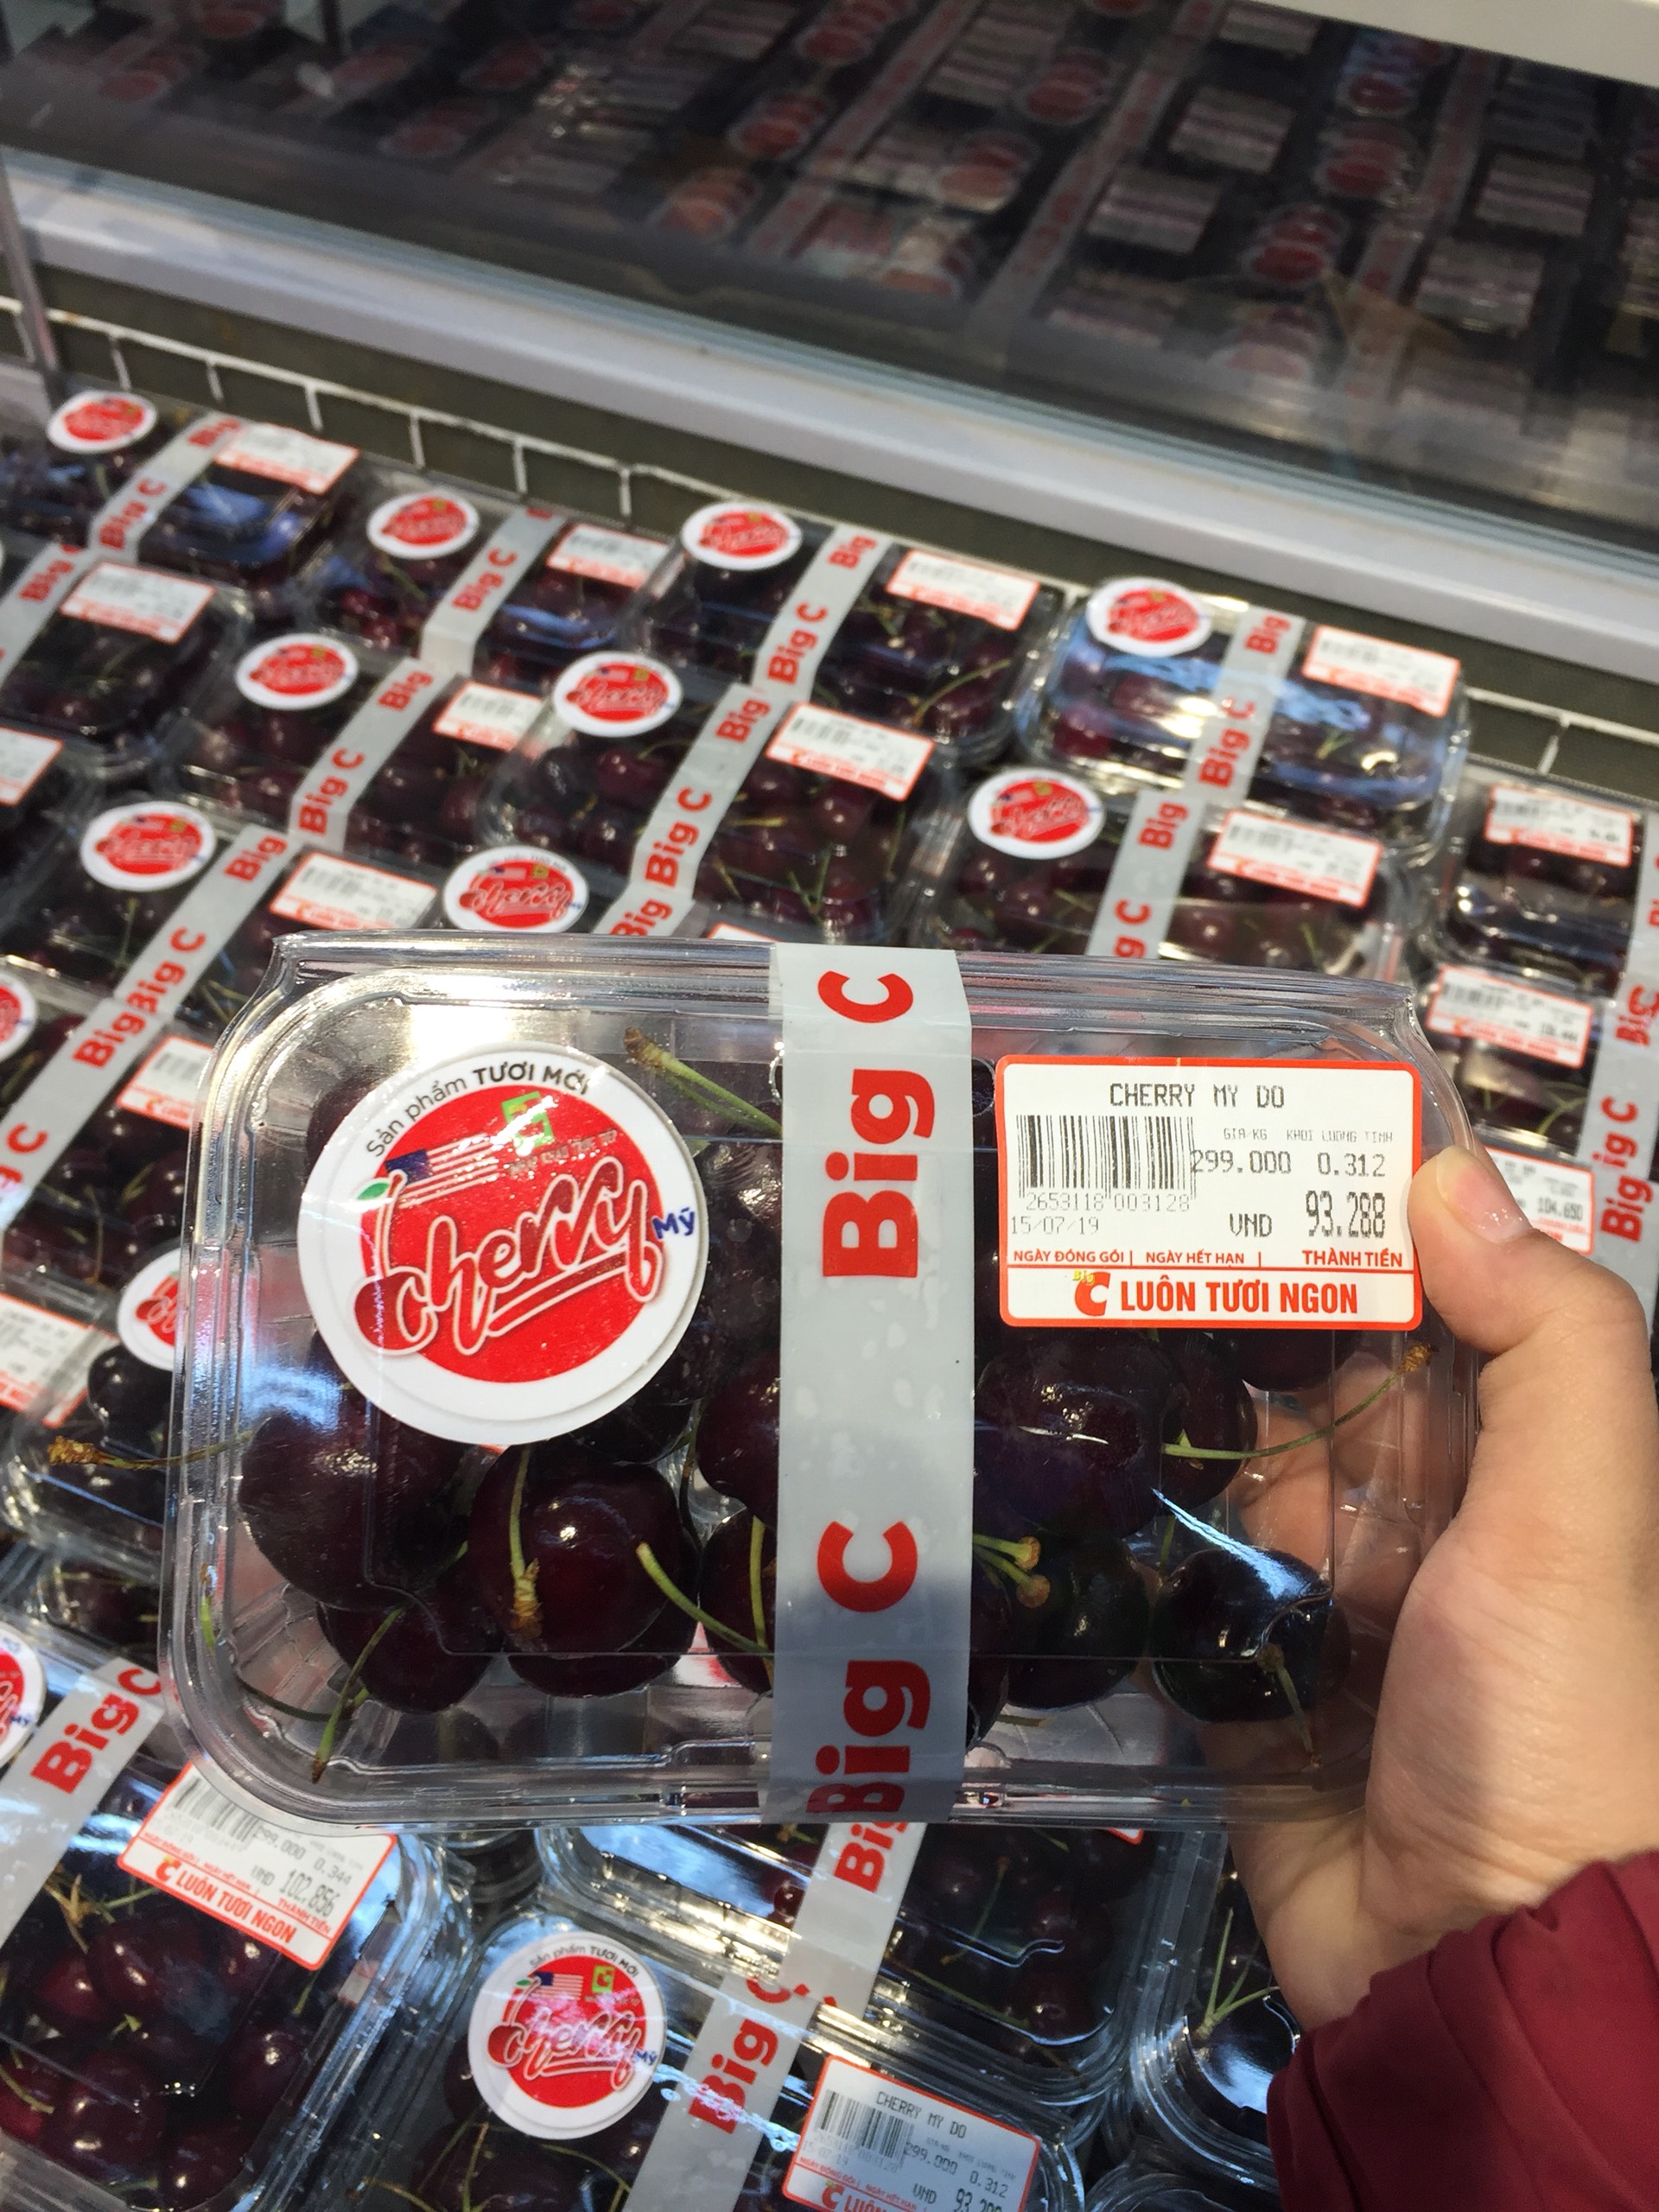 Cherry được bán tại Big C. Ảnh: PV